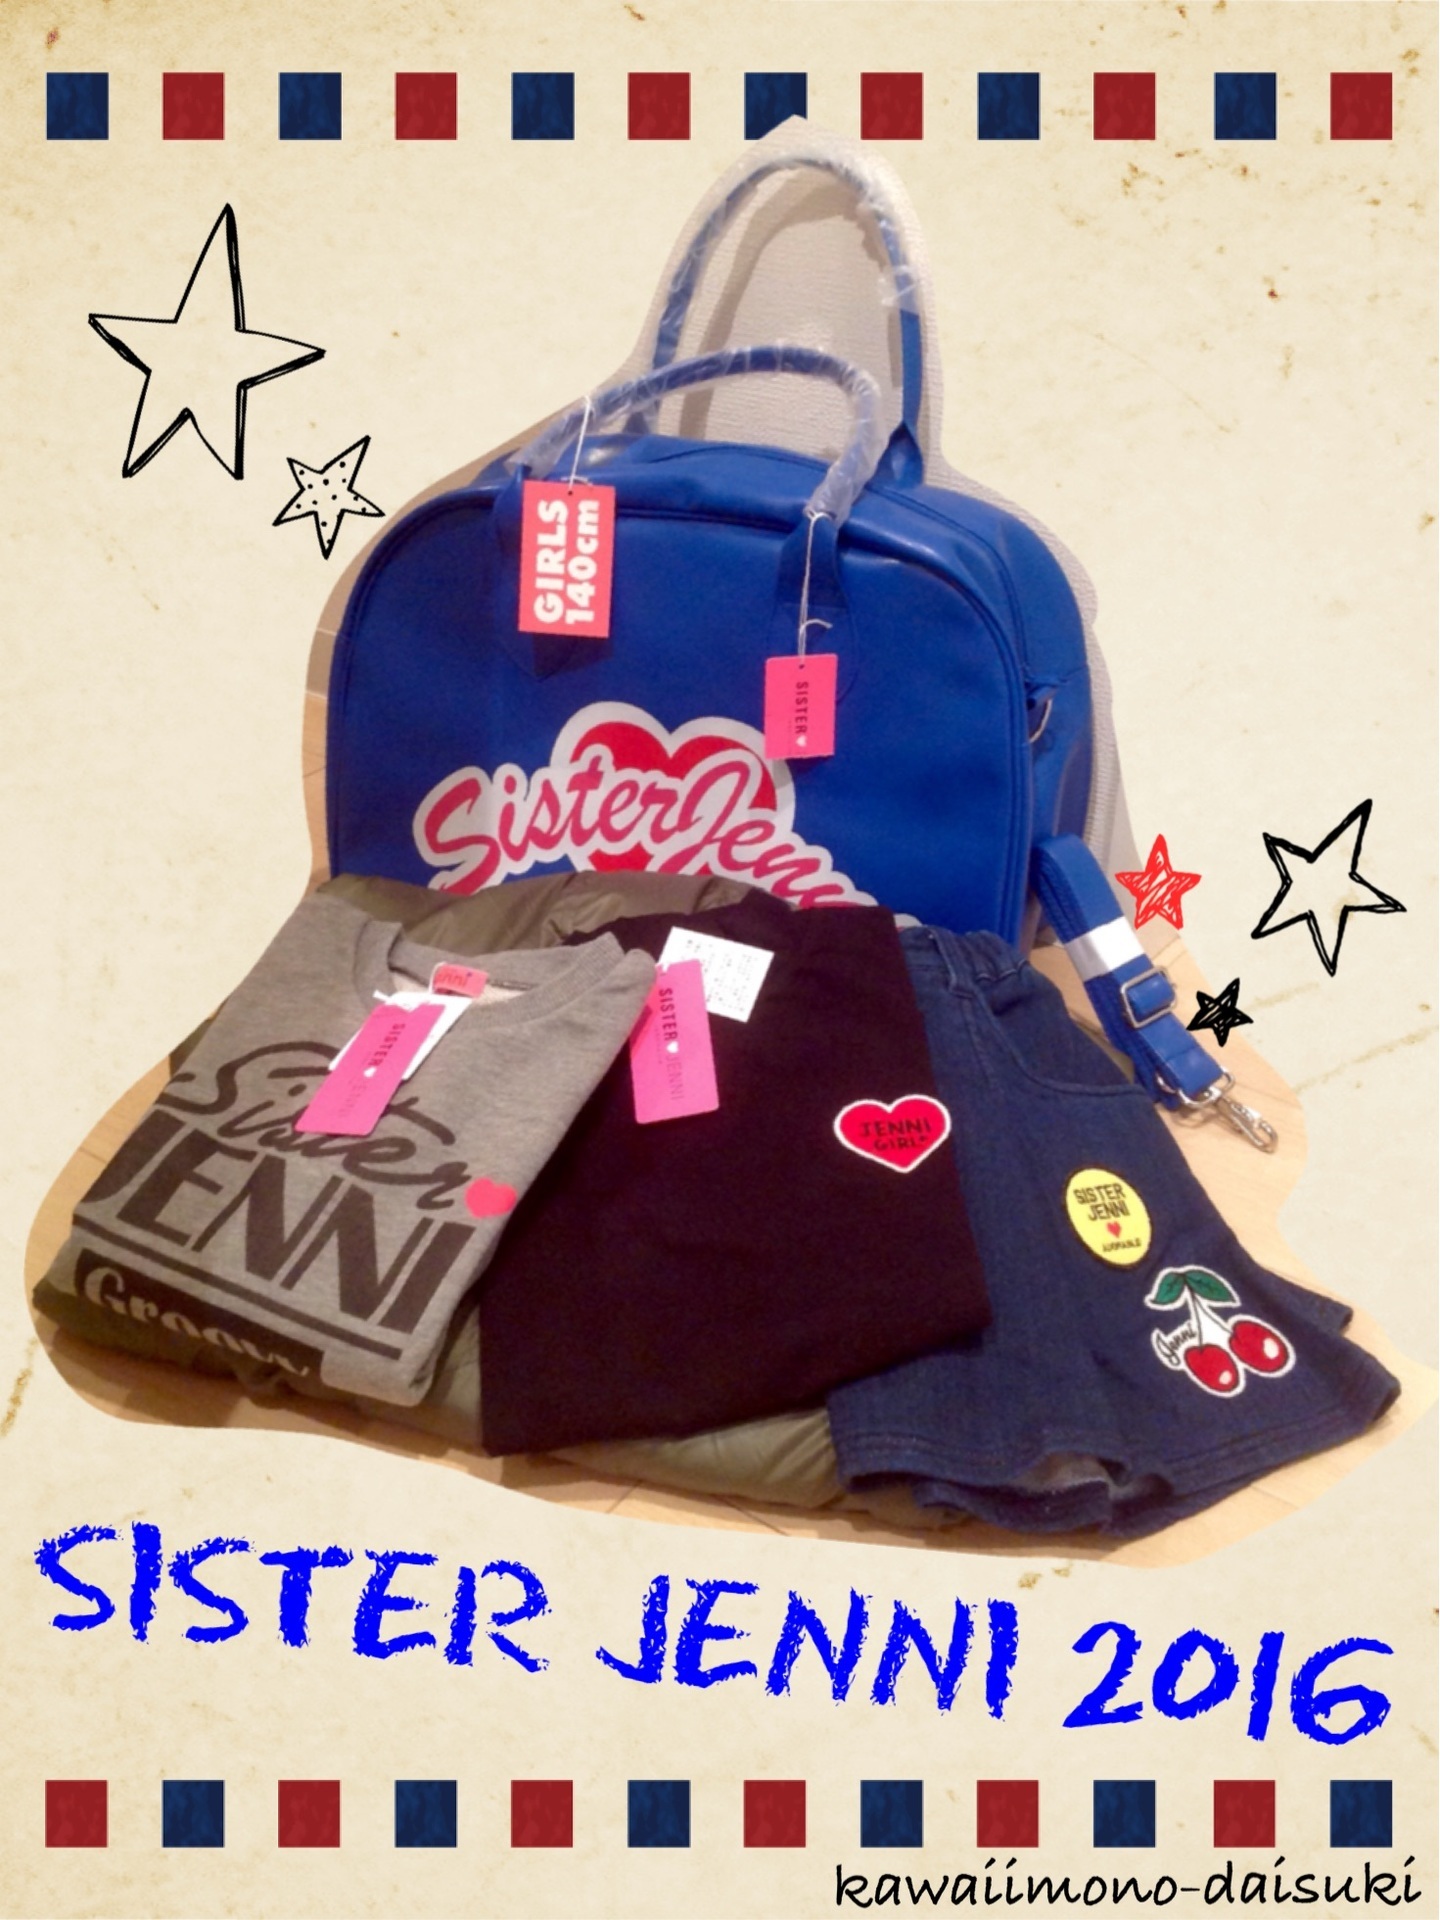 Jenni 16年福袋の公開 ネタバレ カワイイもの大好き ブログ